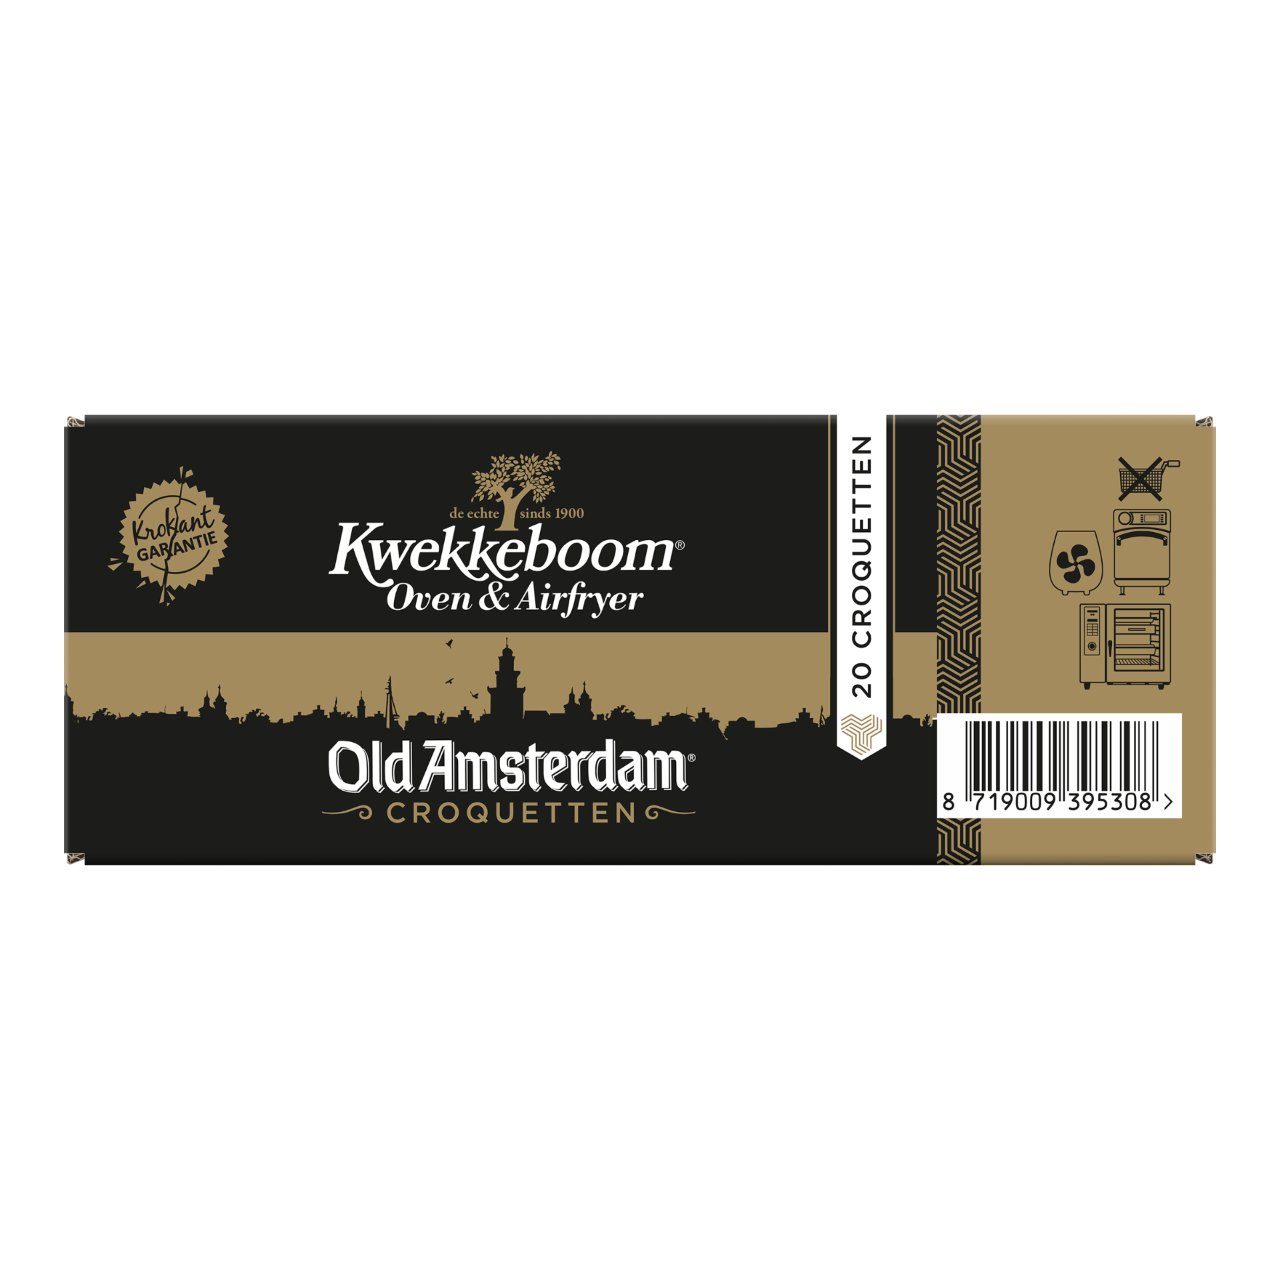 Old amsterdam kroketten